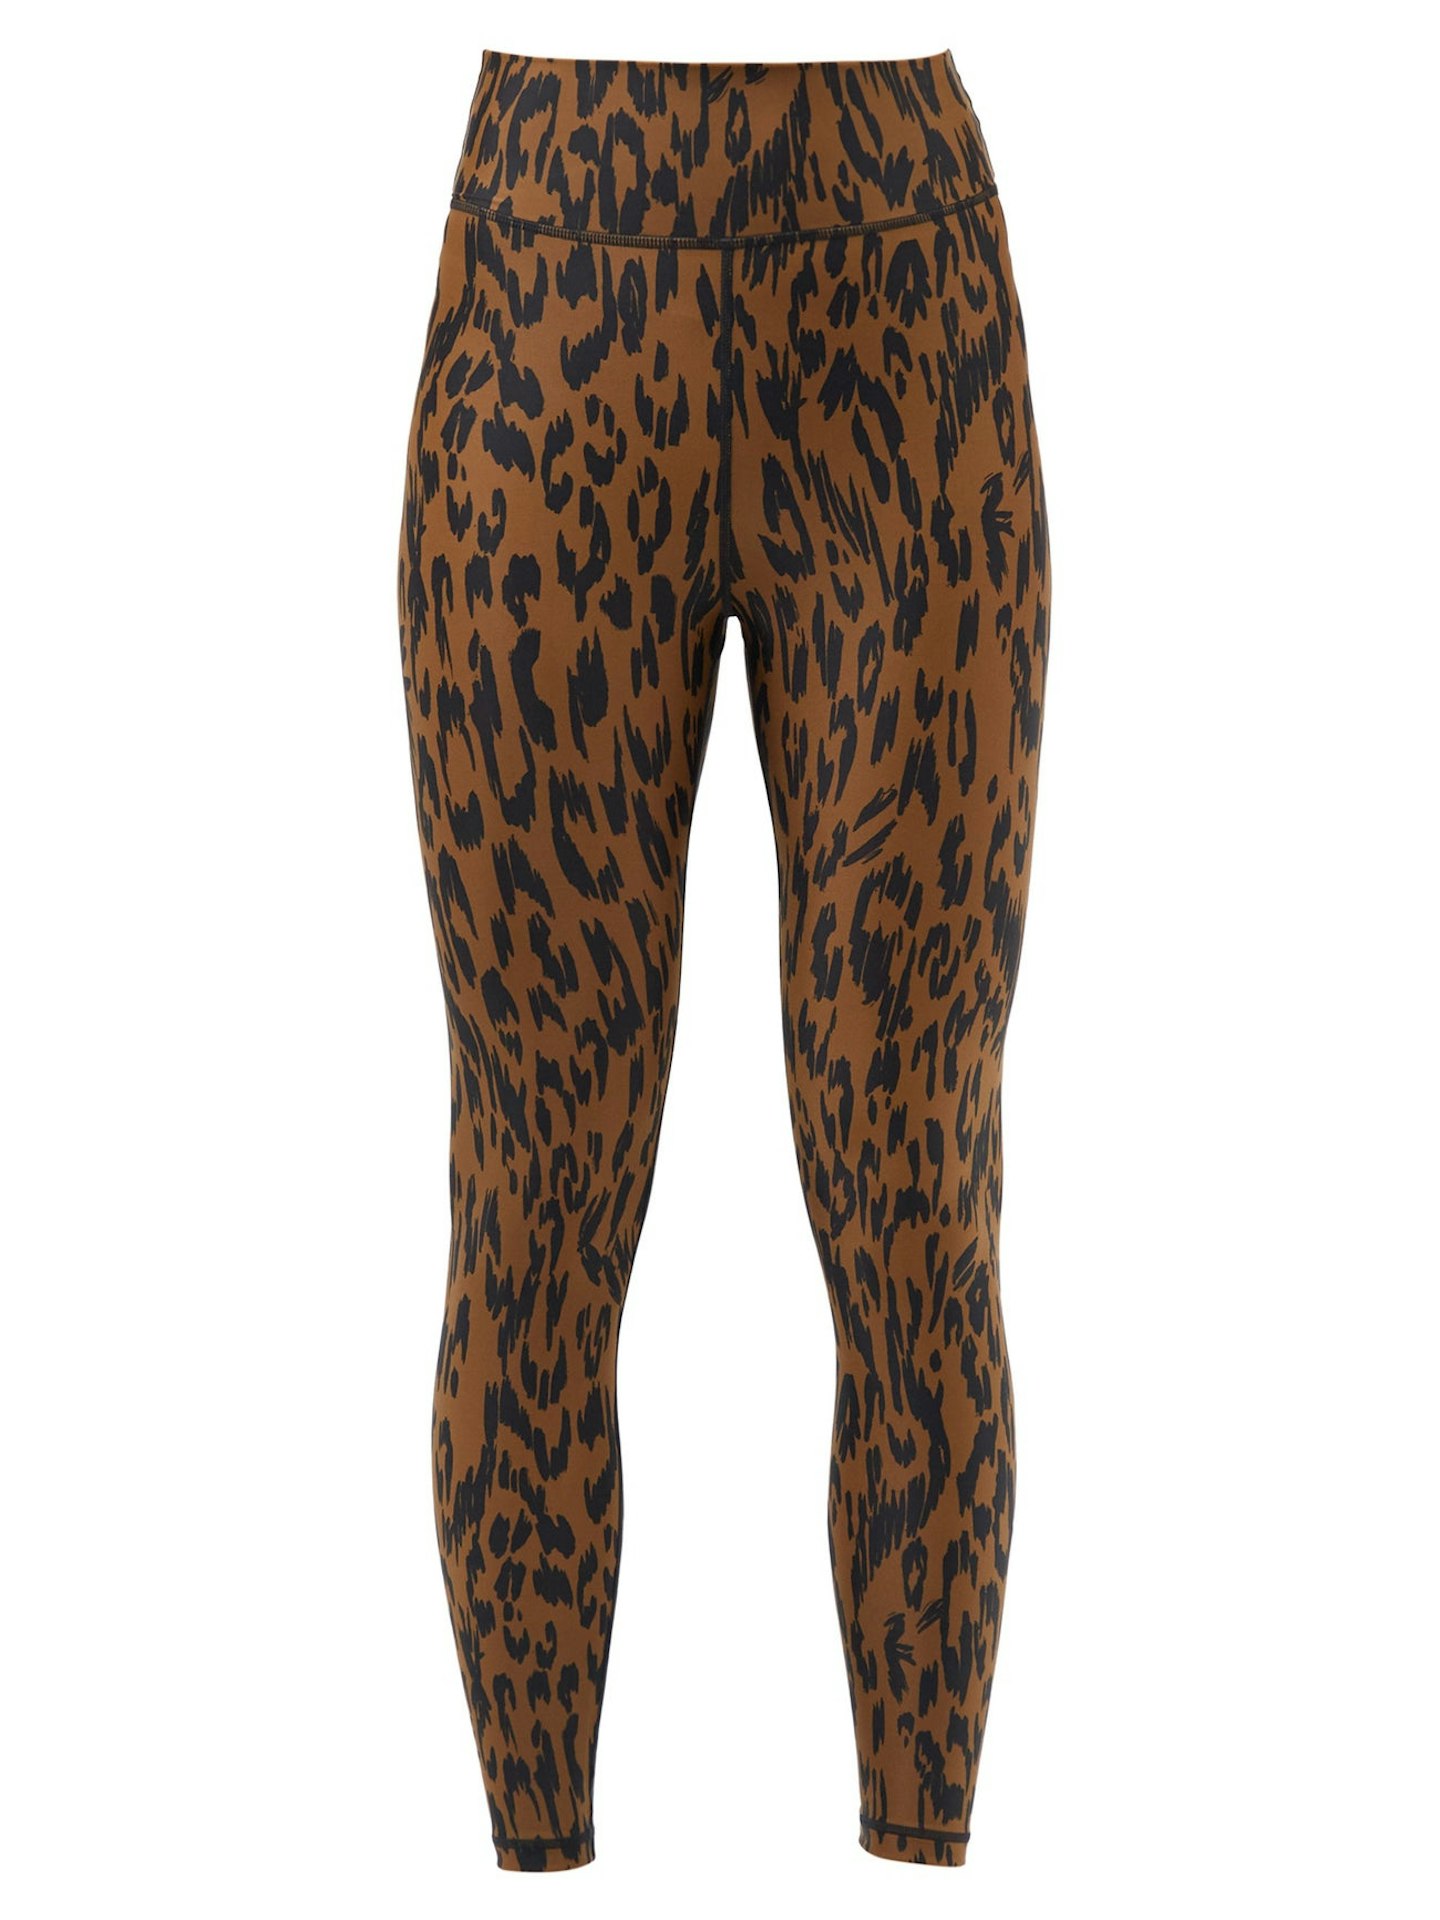 best workout leggings women The Upside, Tropical Dance Leopard-print Jersey Leggings, £108